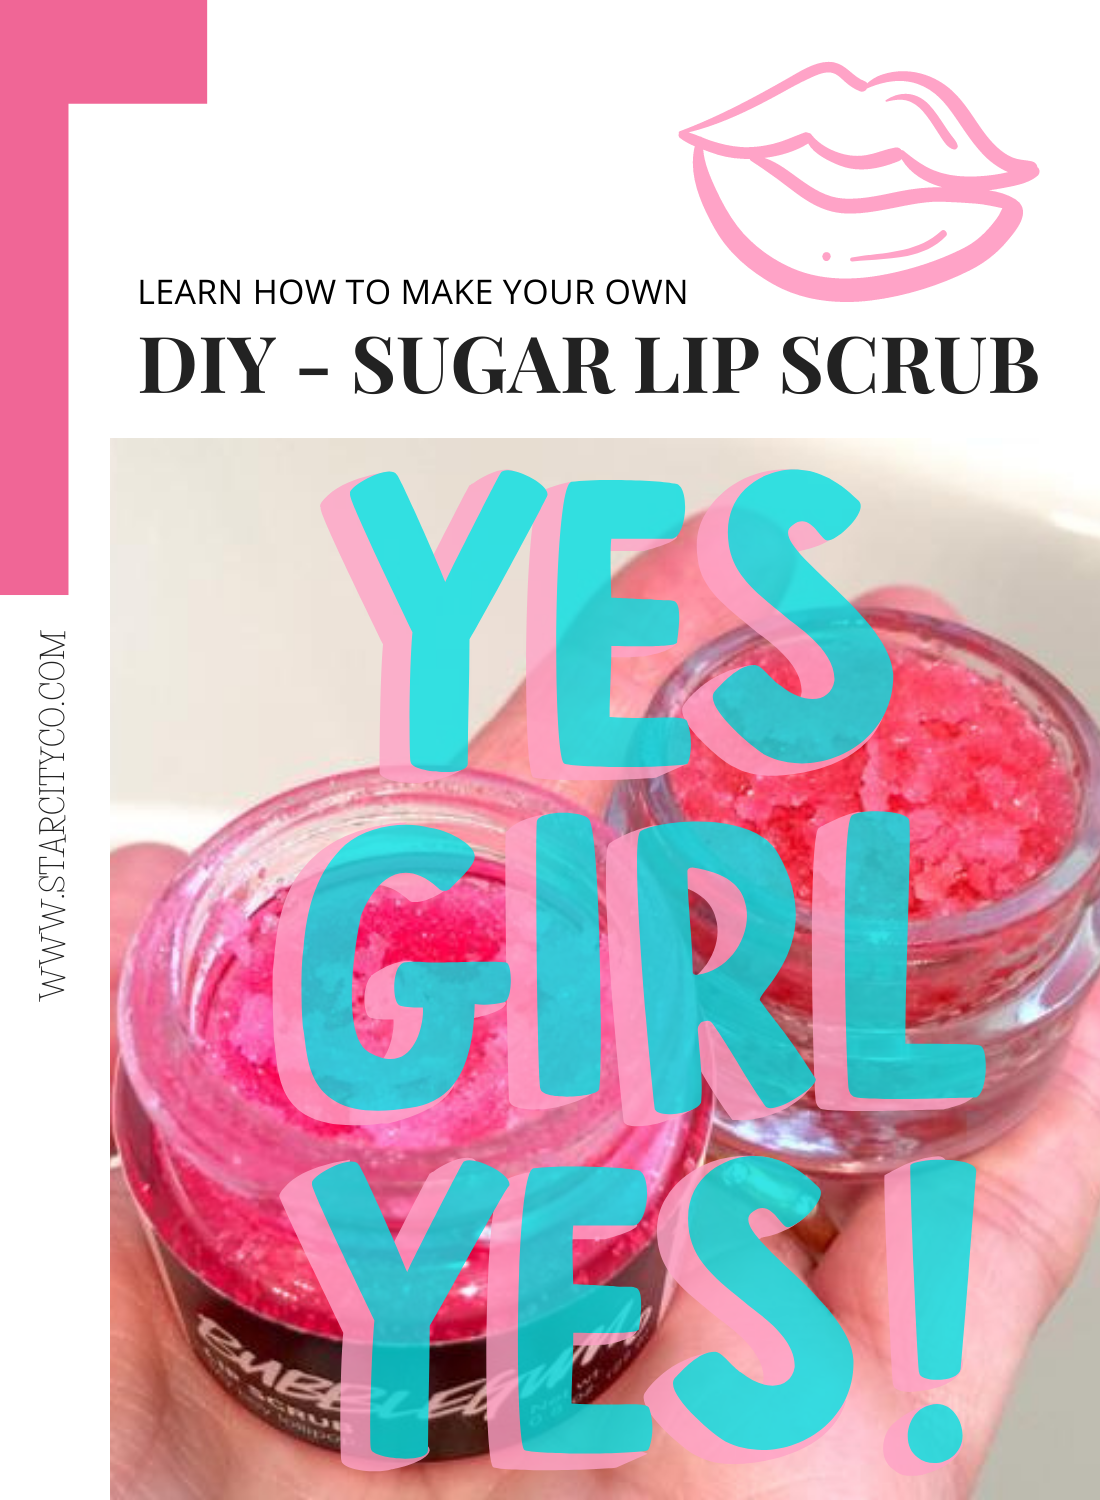 DIY - Sugar Lip Scrub